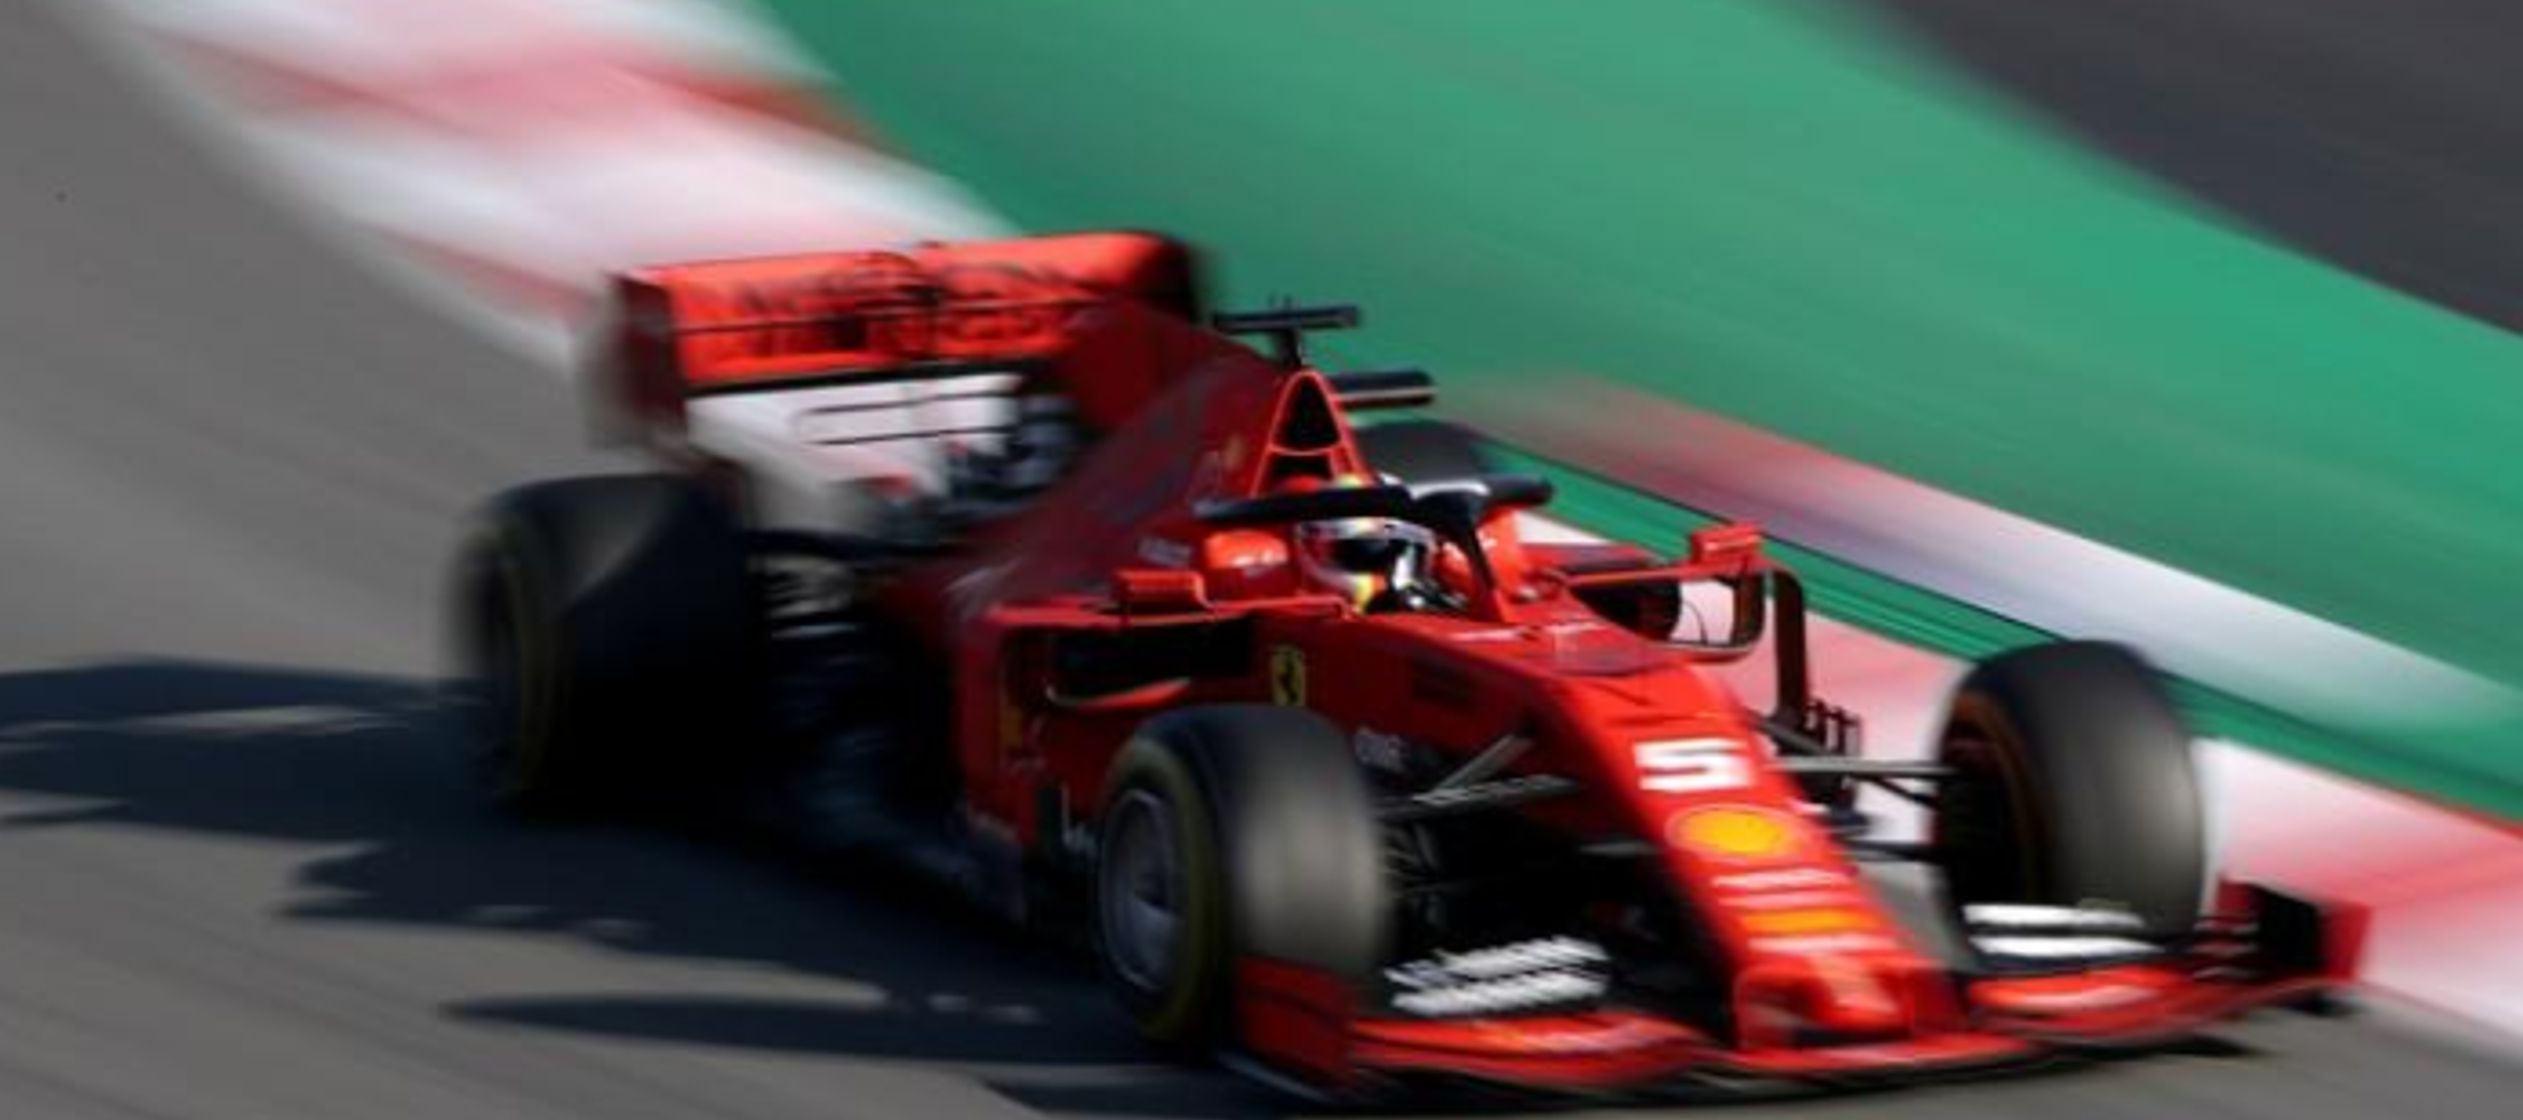 “Increíble”, dijo Vettel a periodistas. “El auto respondió...